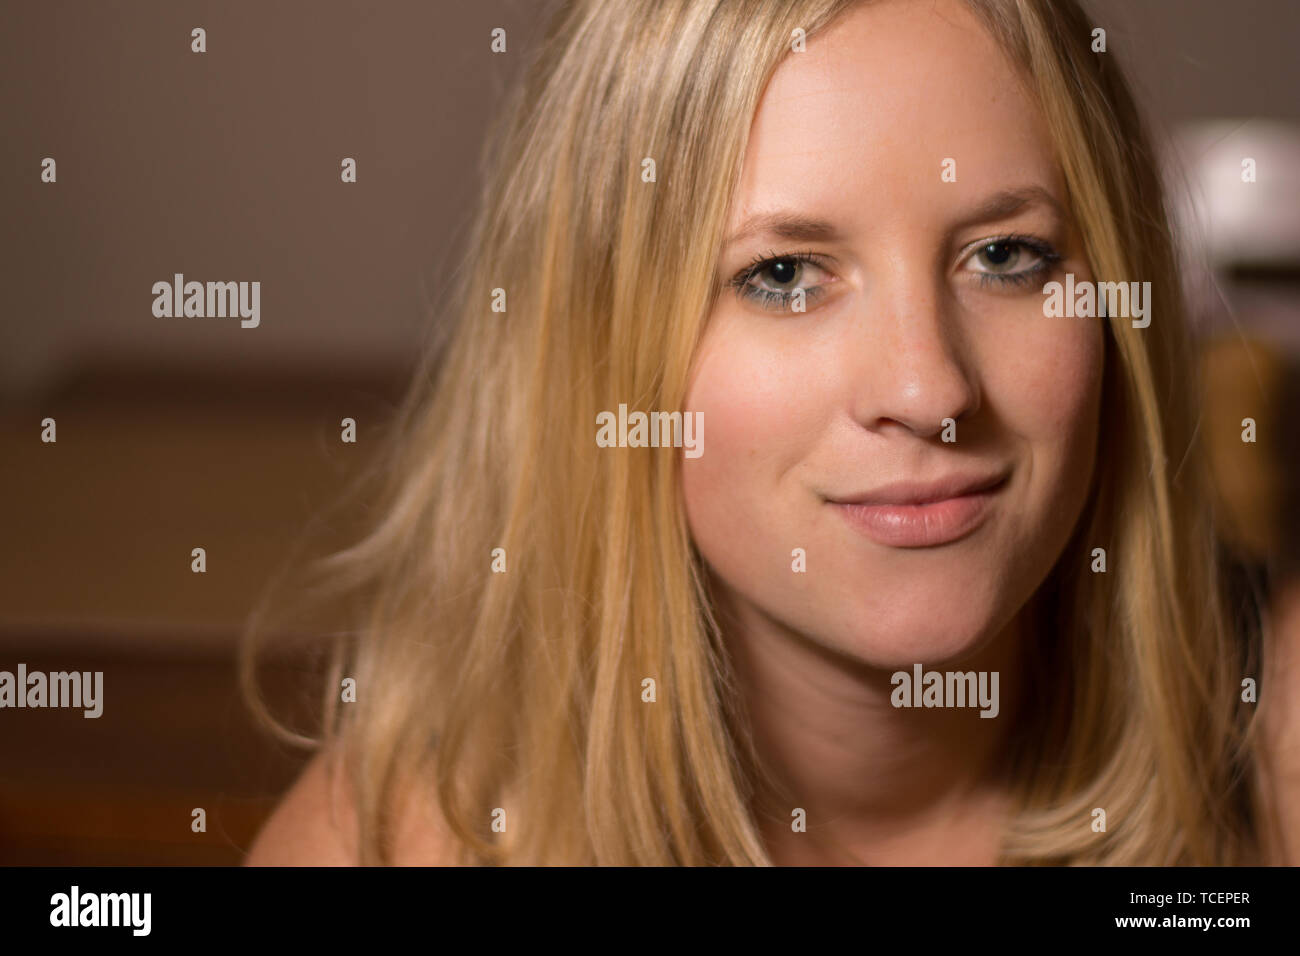 Eine blonde junge Frau Frauen Kopf geschossen mit einem schüchternen Lächeln und natürliches Aussehen. Stockfoto